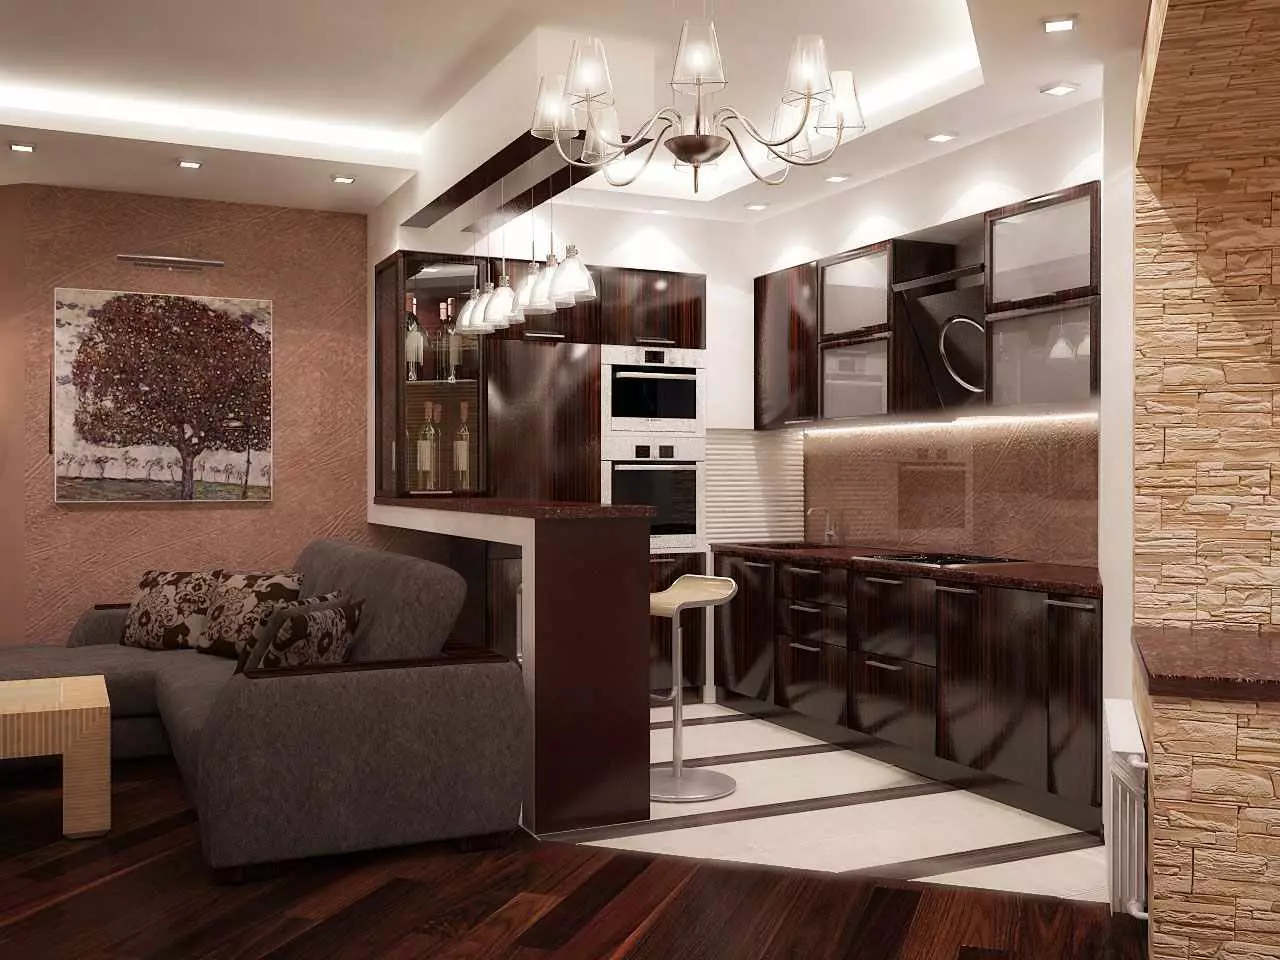 현대적인 스타일의 주방 거실 (69 장의 사진) : 결합 된 객실의 인테리어 디자인, 밝은 주방 거실 스타일 현대적인 고전, 천장 장식 및 바닥 9520_37